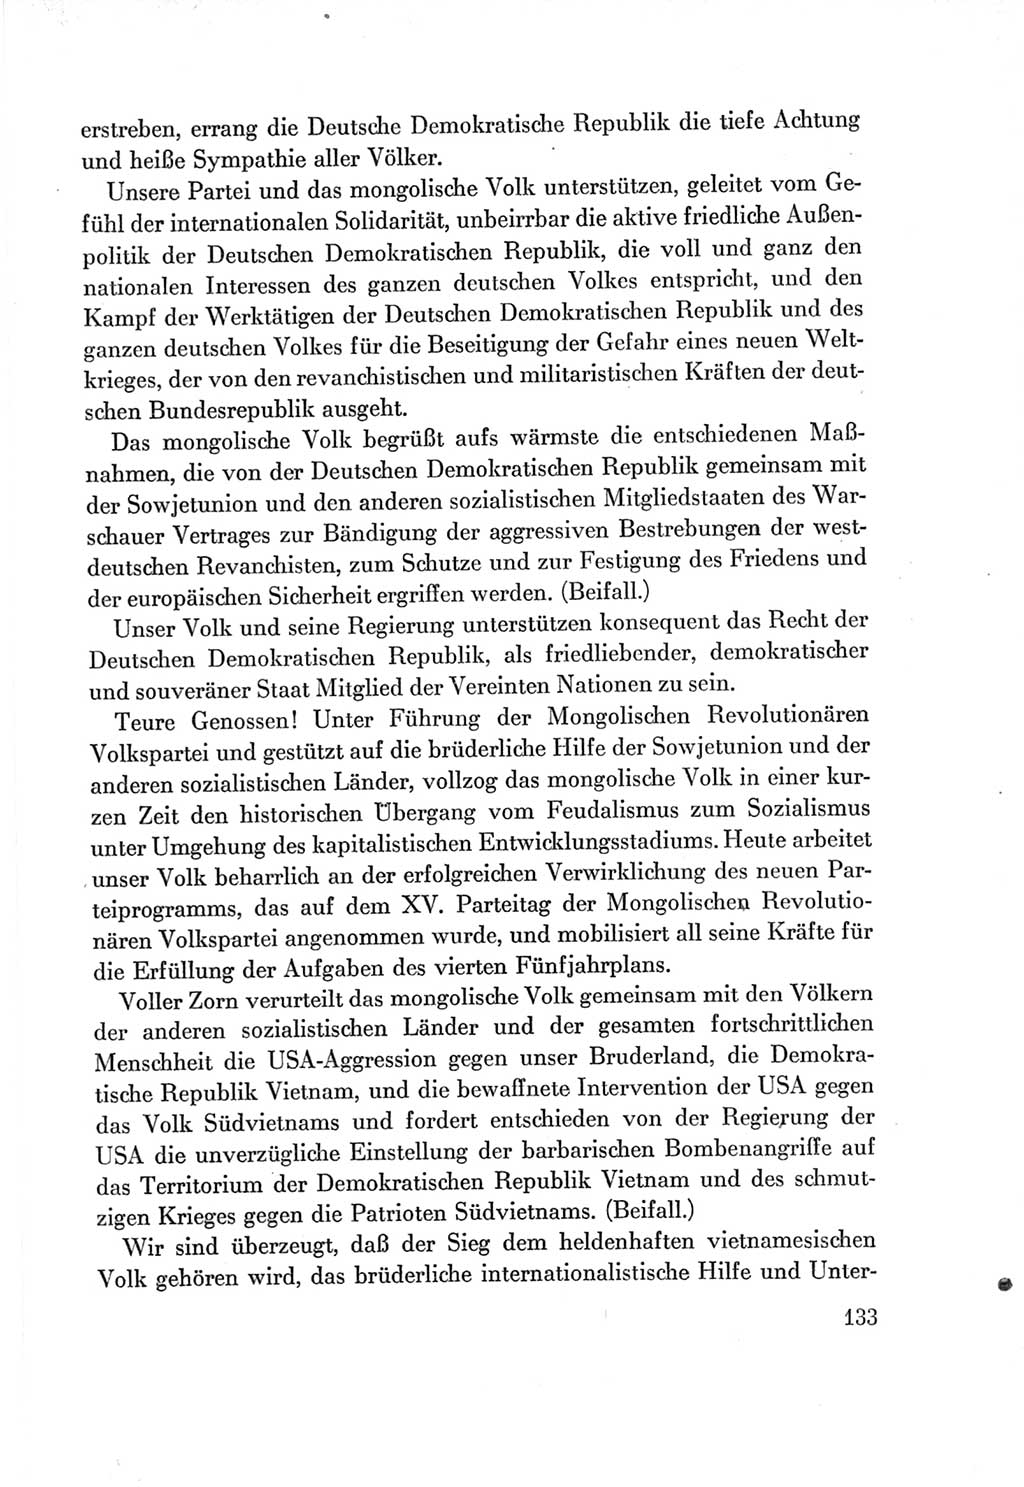 Protokoll der Verhandlungen des Ⅶ. Parteitages der Sozialistischen Einheitspartei Deutschlands (SED) [Deutsche Demokratische Republik (DDR)] 1967, Band Ⅱ, Seite 133 (Prot. Verh. Ⅶ. PT SED DDR 1967, Bd. Ⅱ, S. 133)